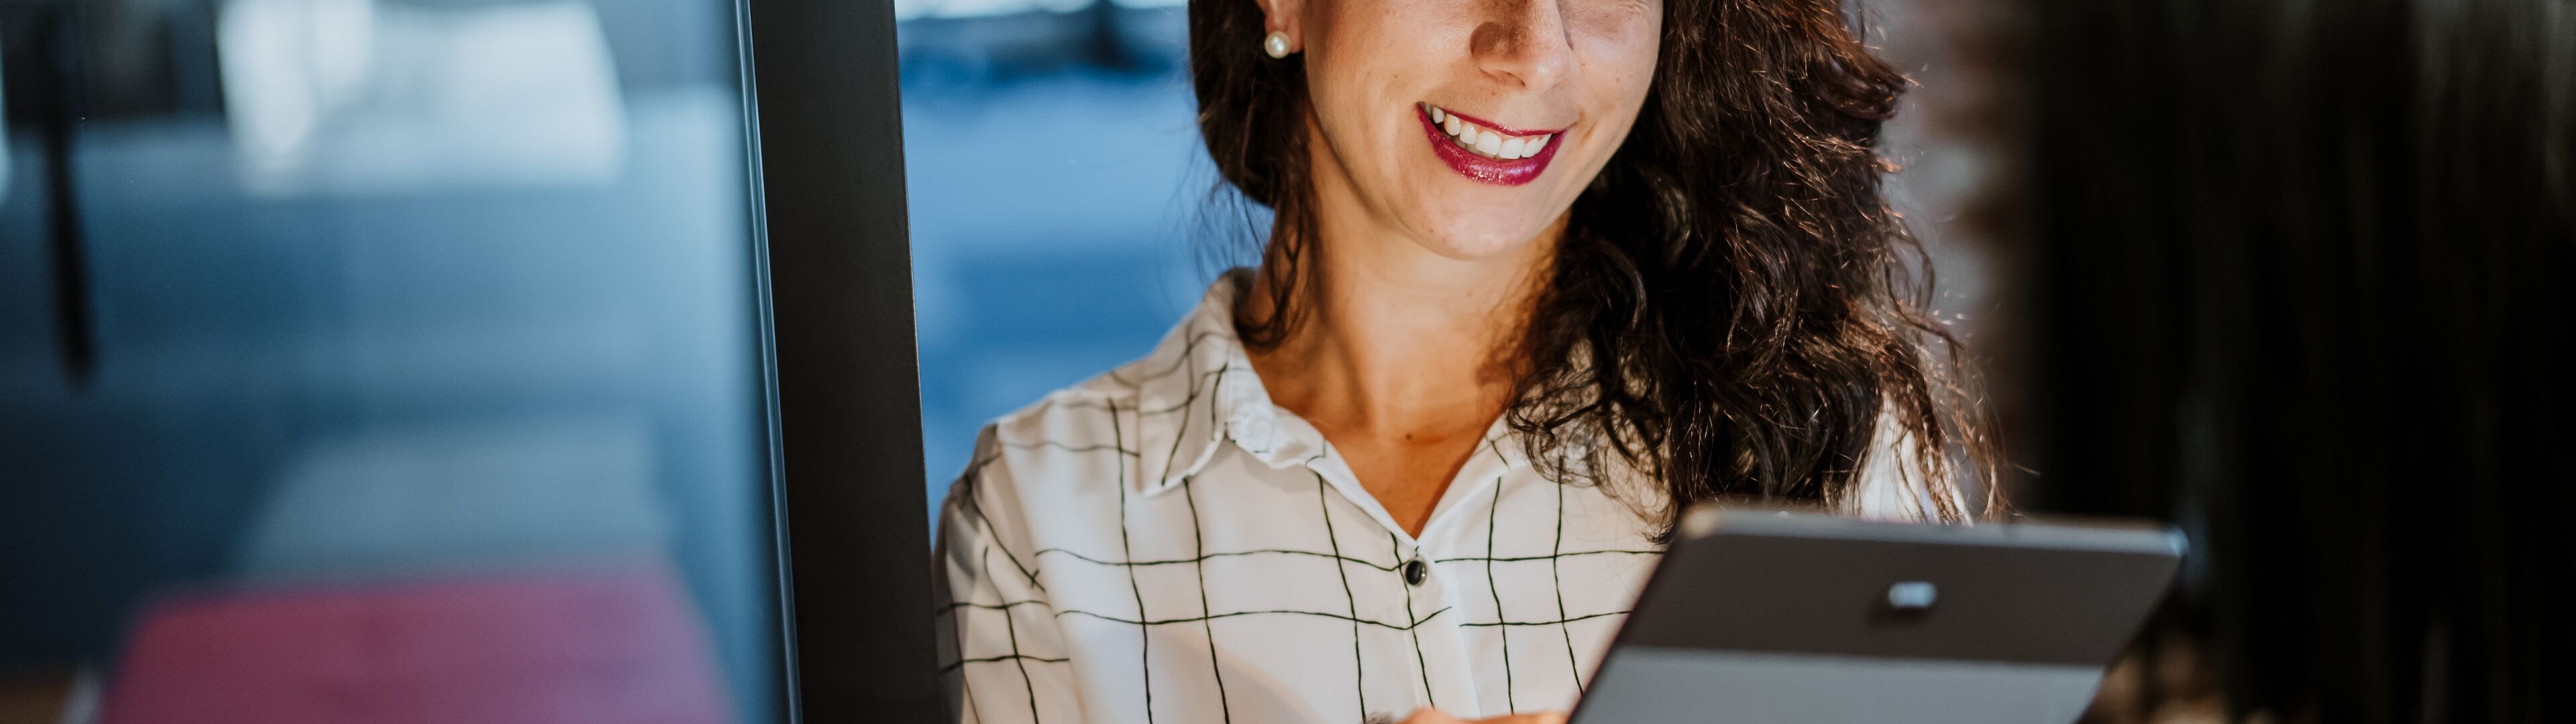 Une femme d'affaires confiante en chemise à carreaux blanche sourit en tenant une tablette numérique dans un environnement de bureau.